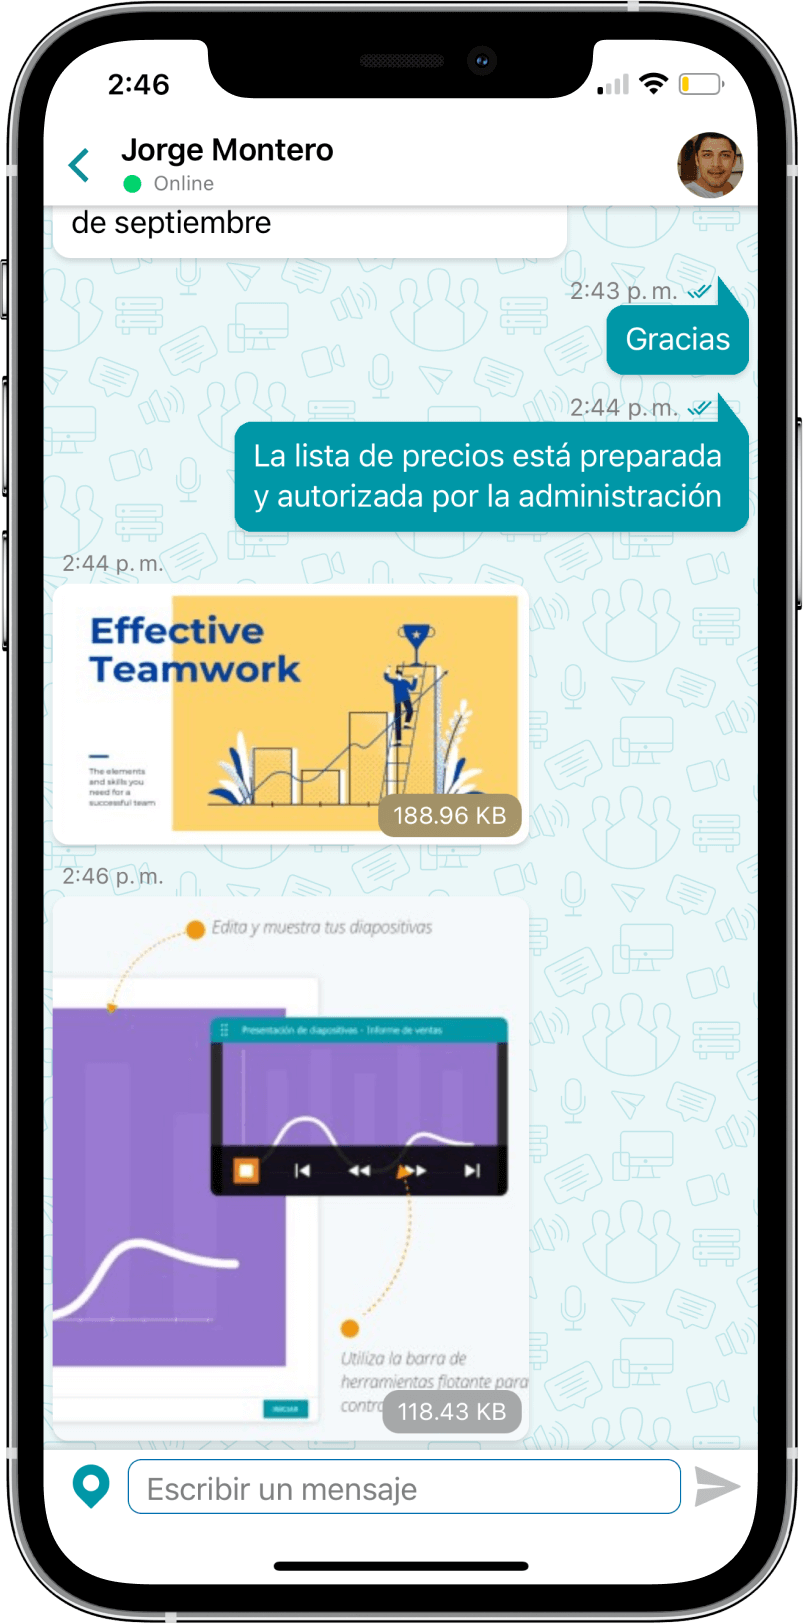 TrueConf 3.3 para iOS: nueva interfaz de usuario, modo de reunión inteligente, acceso sin conexión a chats, contactos e historial de llamadas 8